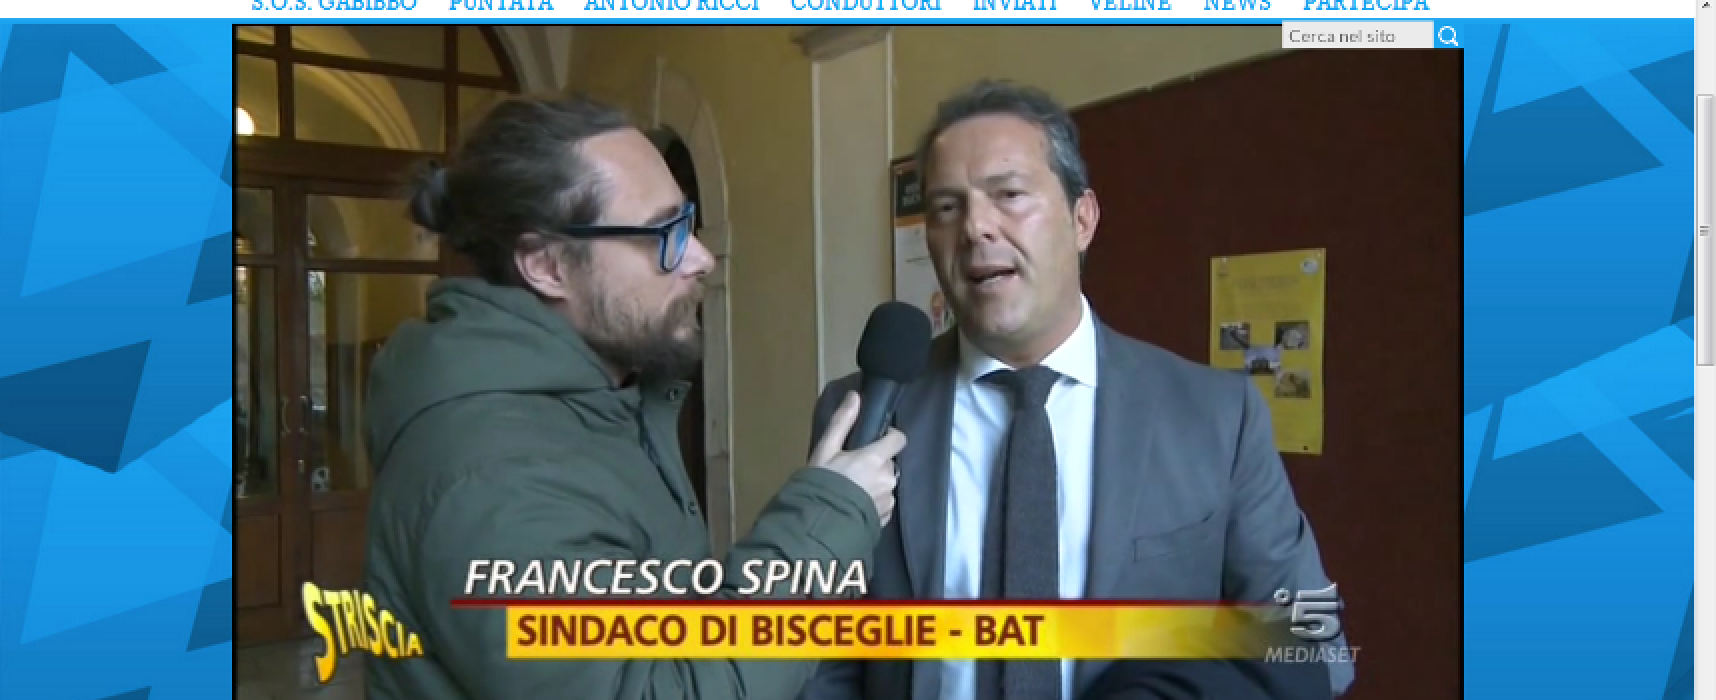 Pinuccio (Striscia la notizia) punzecchia il sindaco Francesco Spina su passaggio al Pd / VIDEO